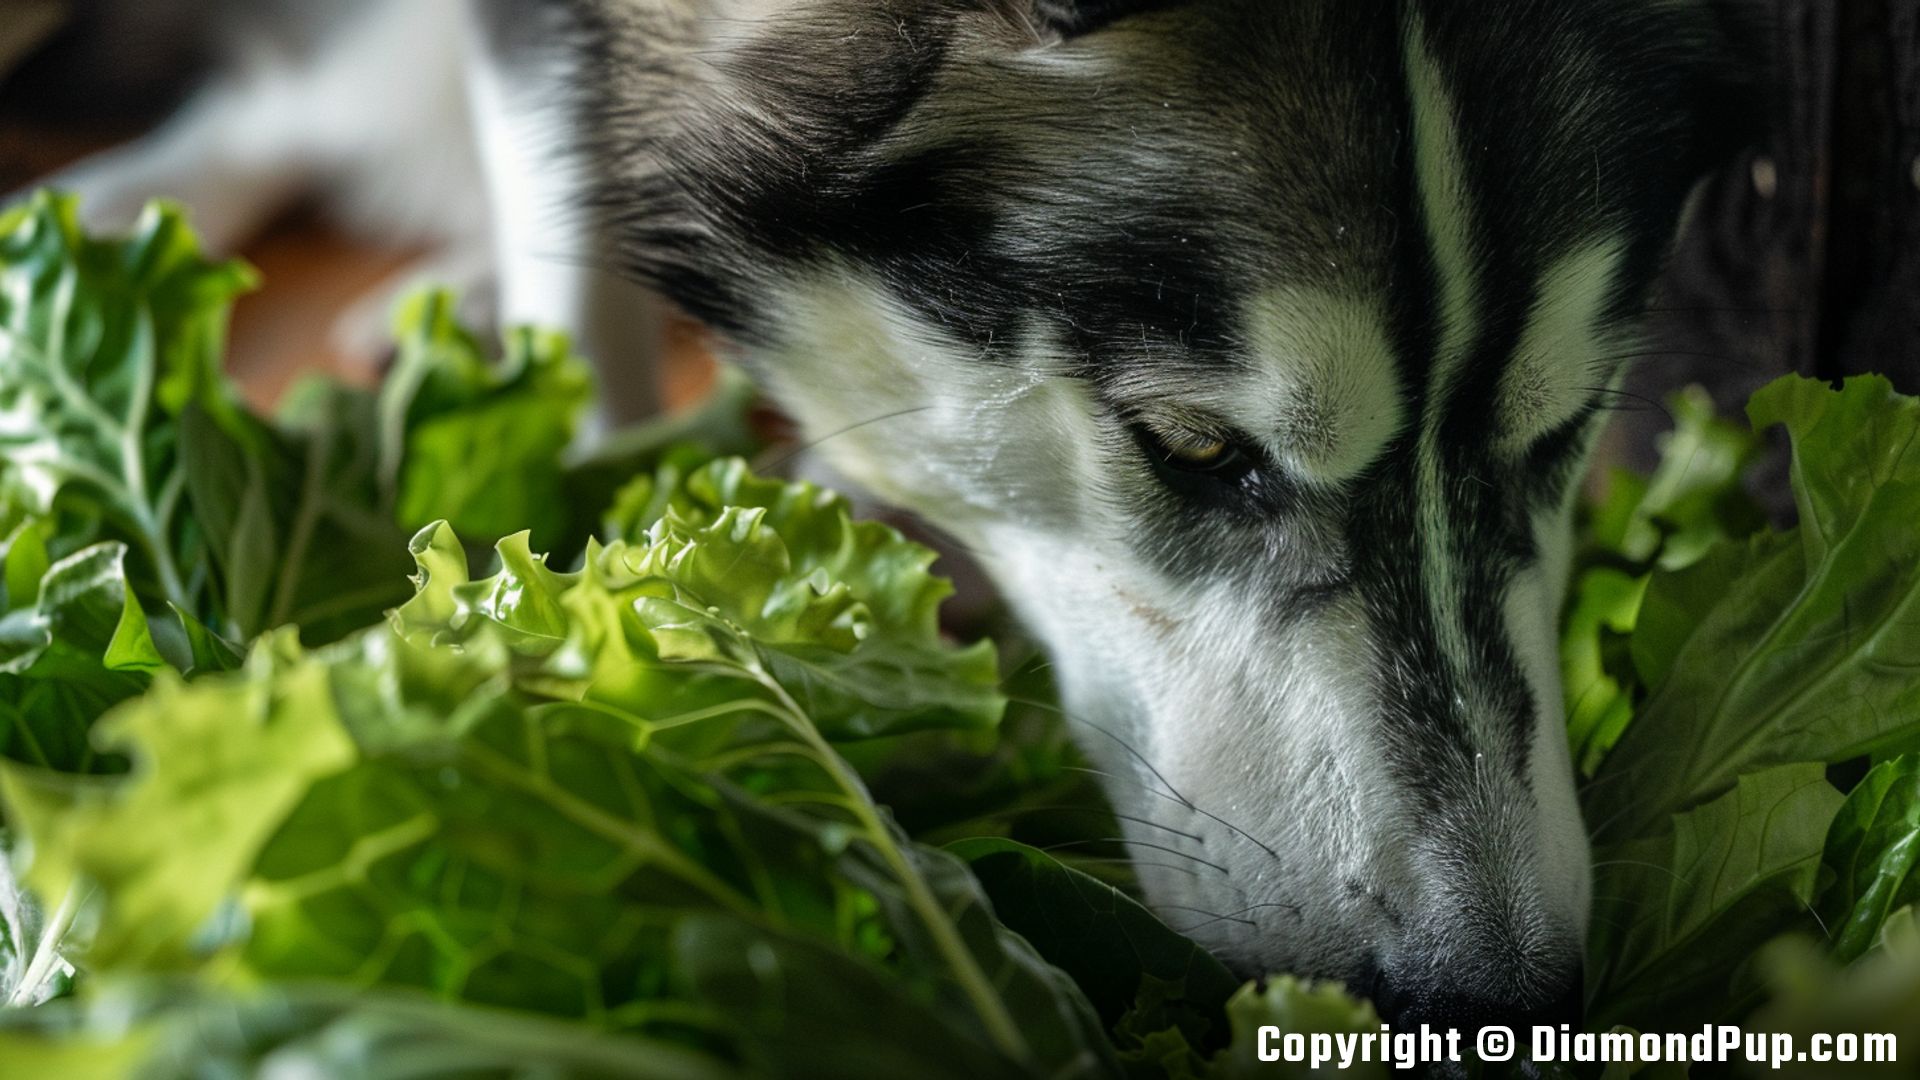 Image of Husky Eating Lettuce